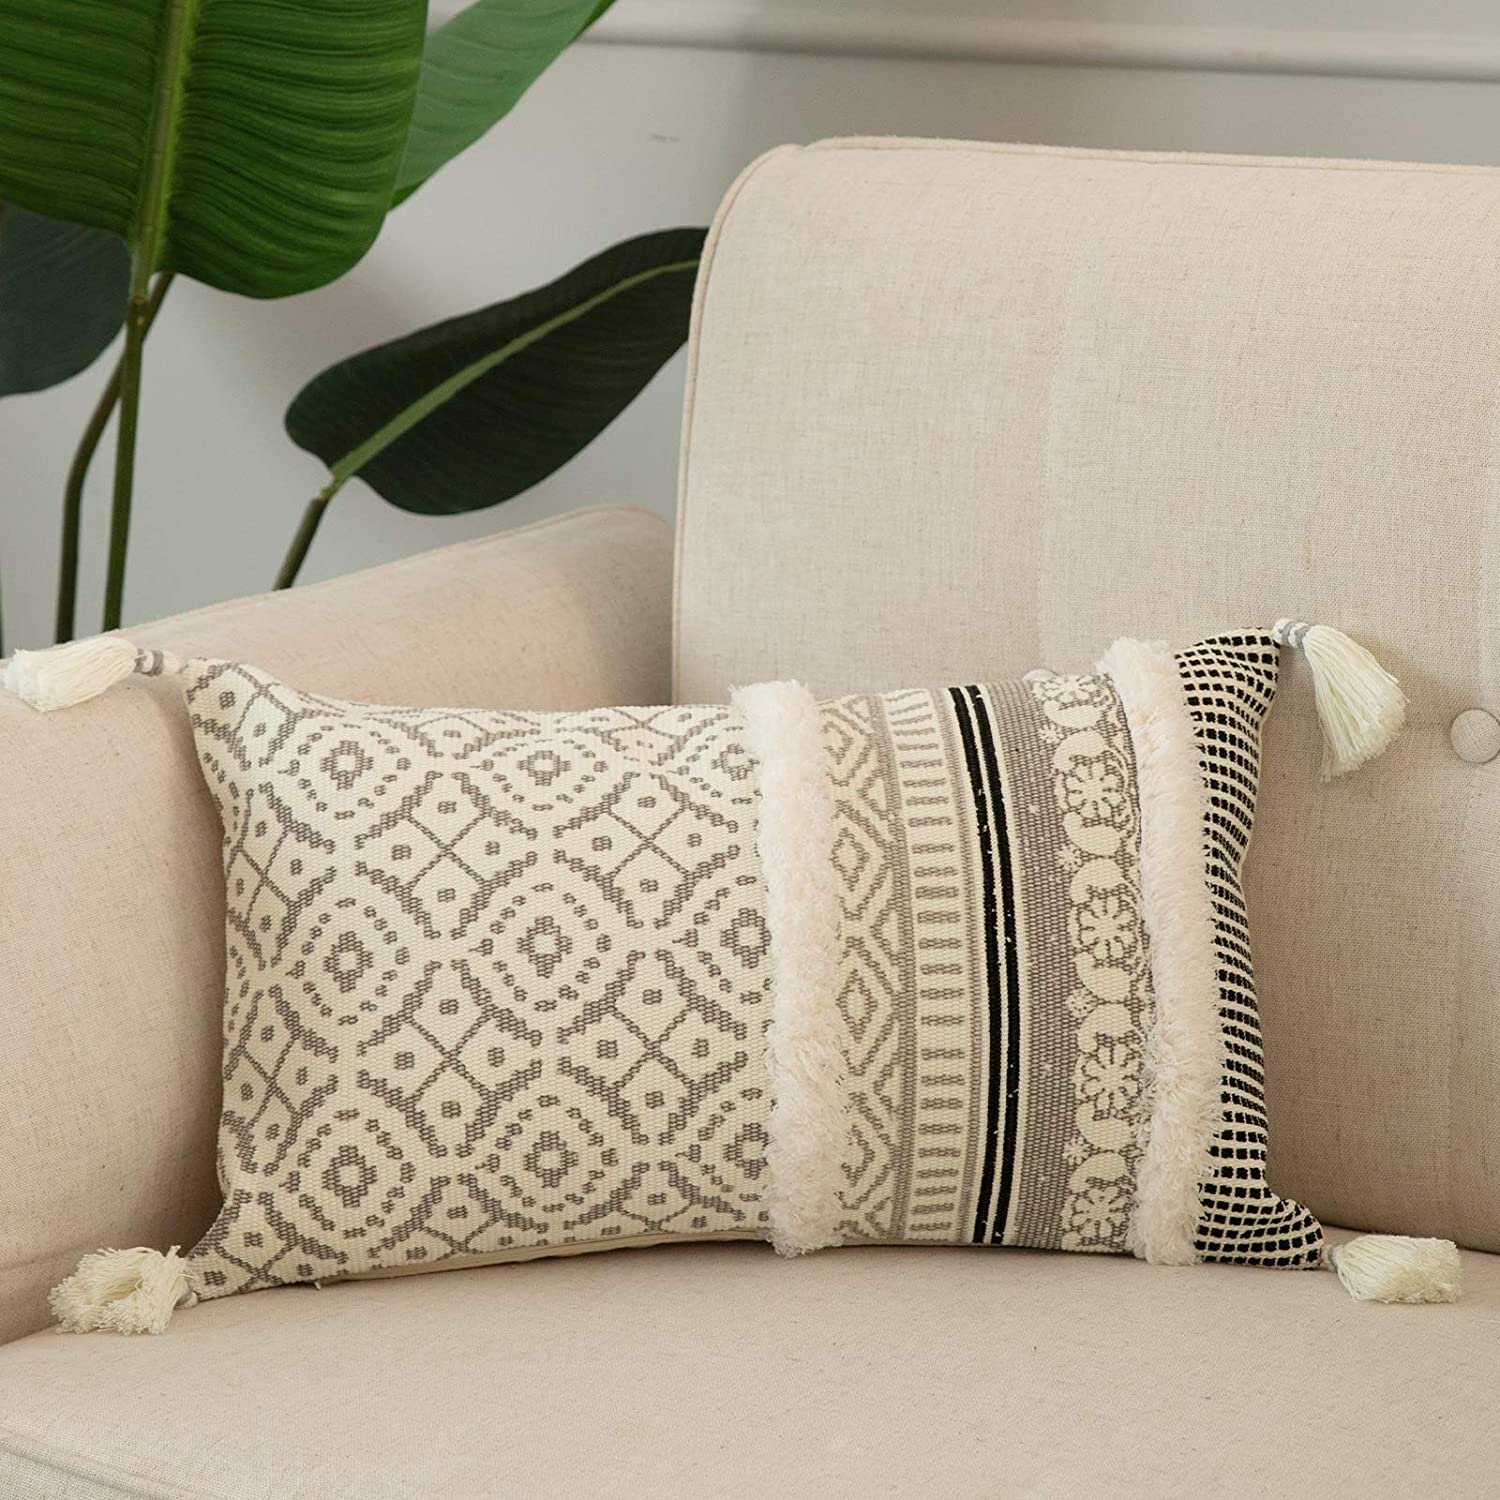 Dog Beach Cushion Cover Sofa Decorative Pillow Case fits 18" x 18" cushion 